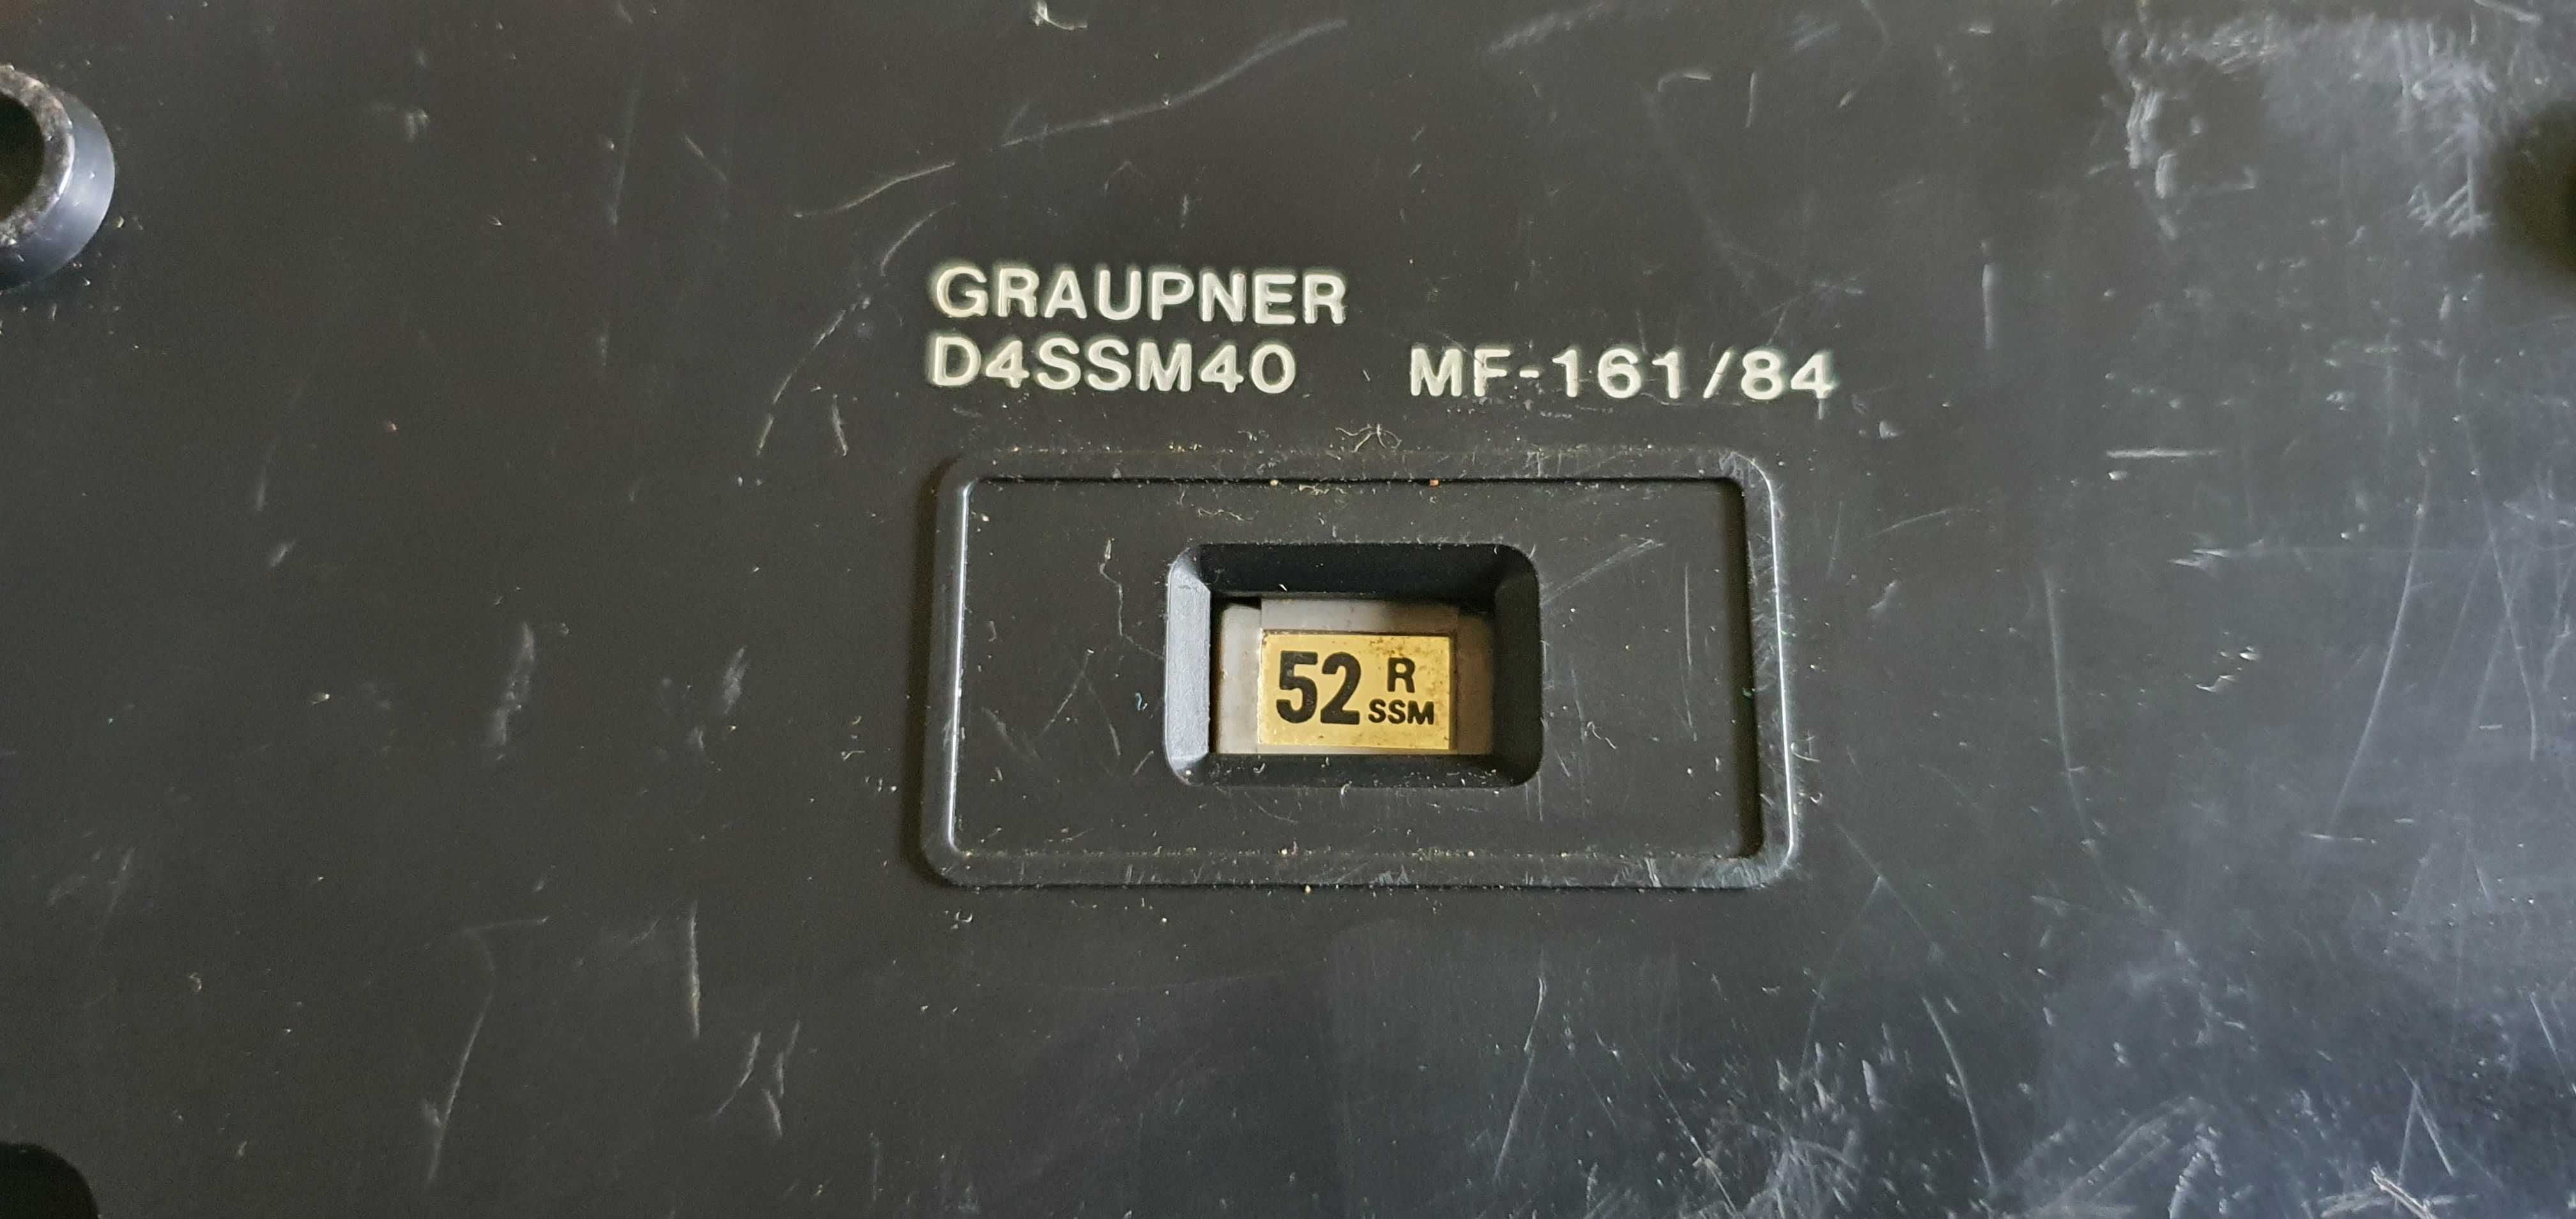 Aparatura radio RC Graupner JR D4 ssm40